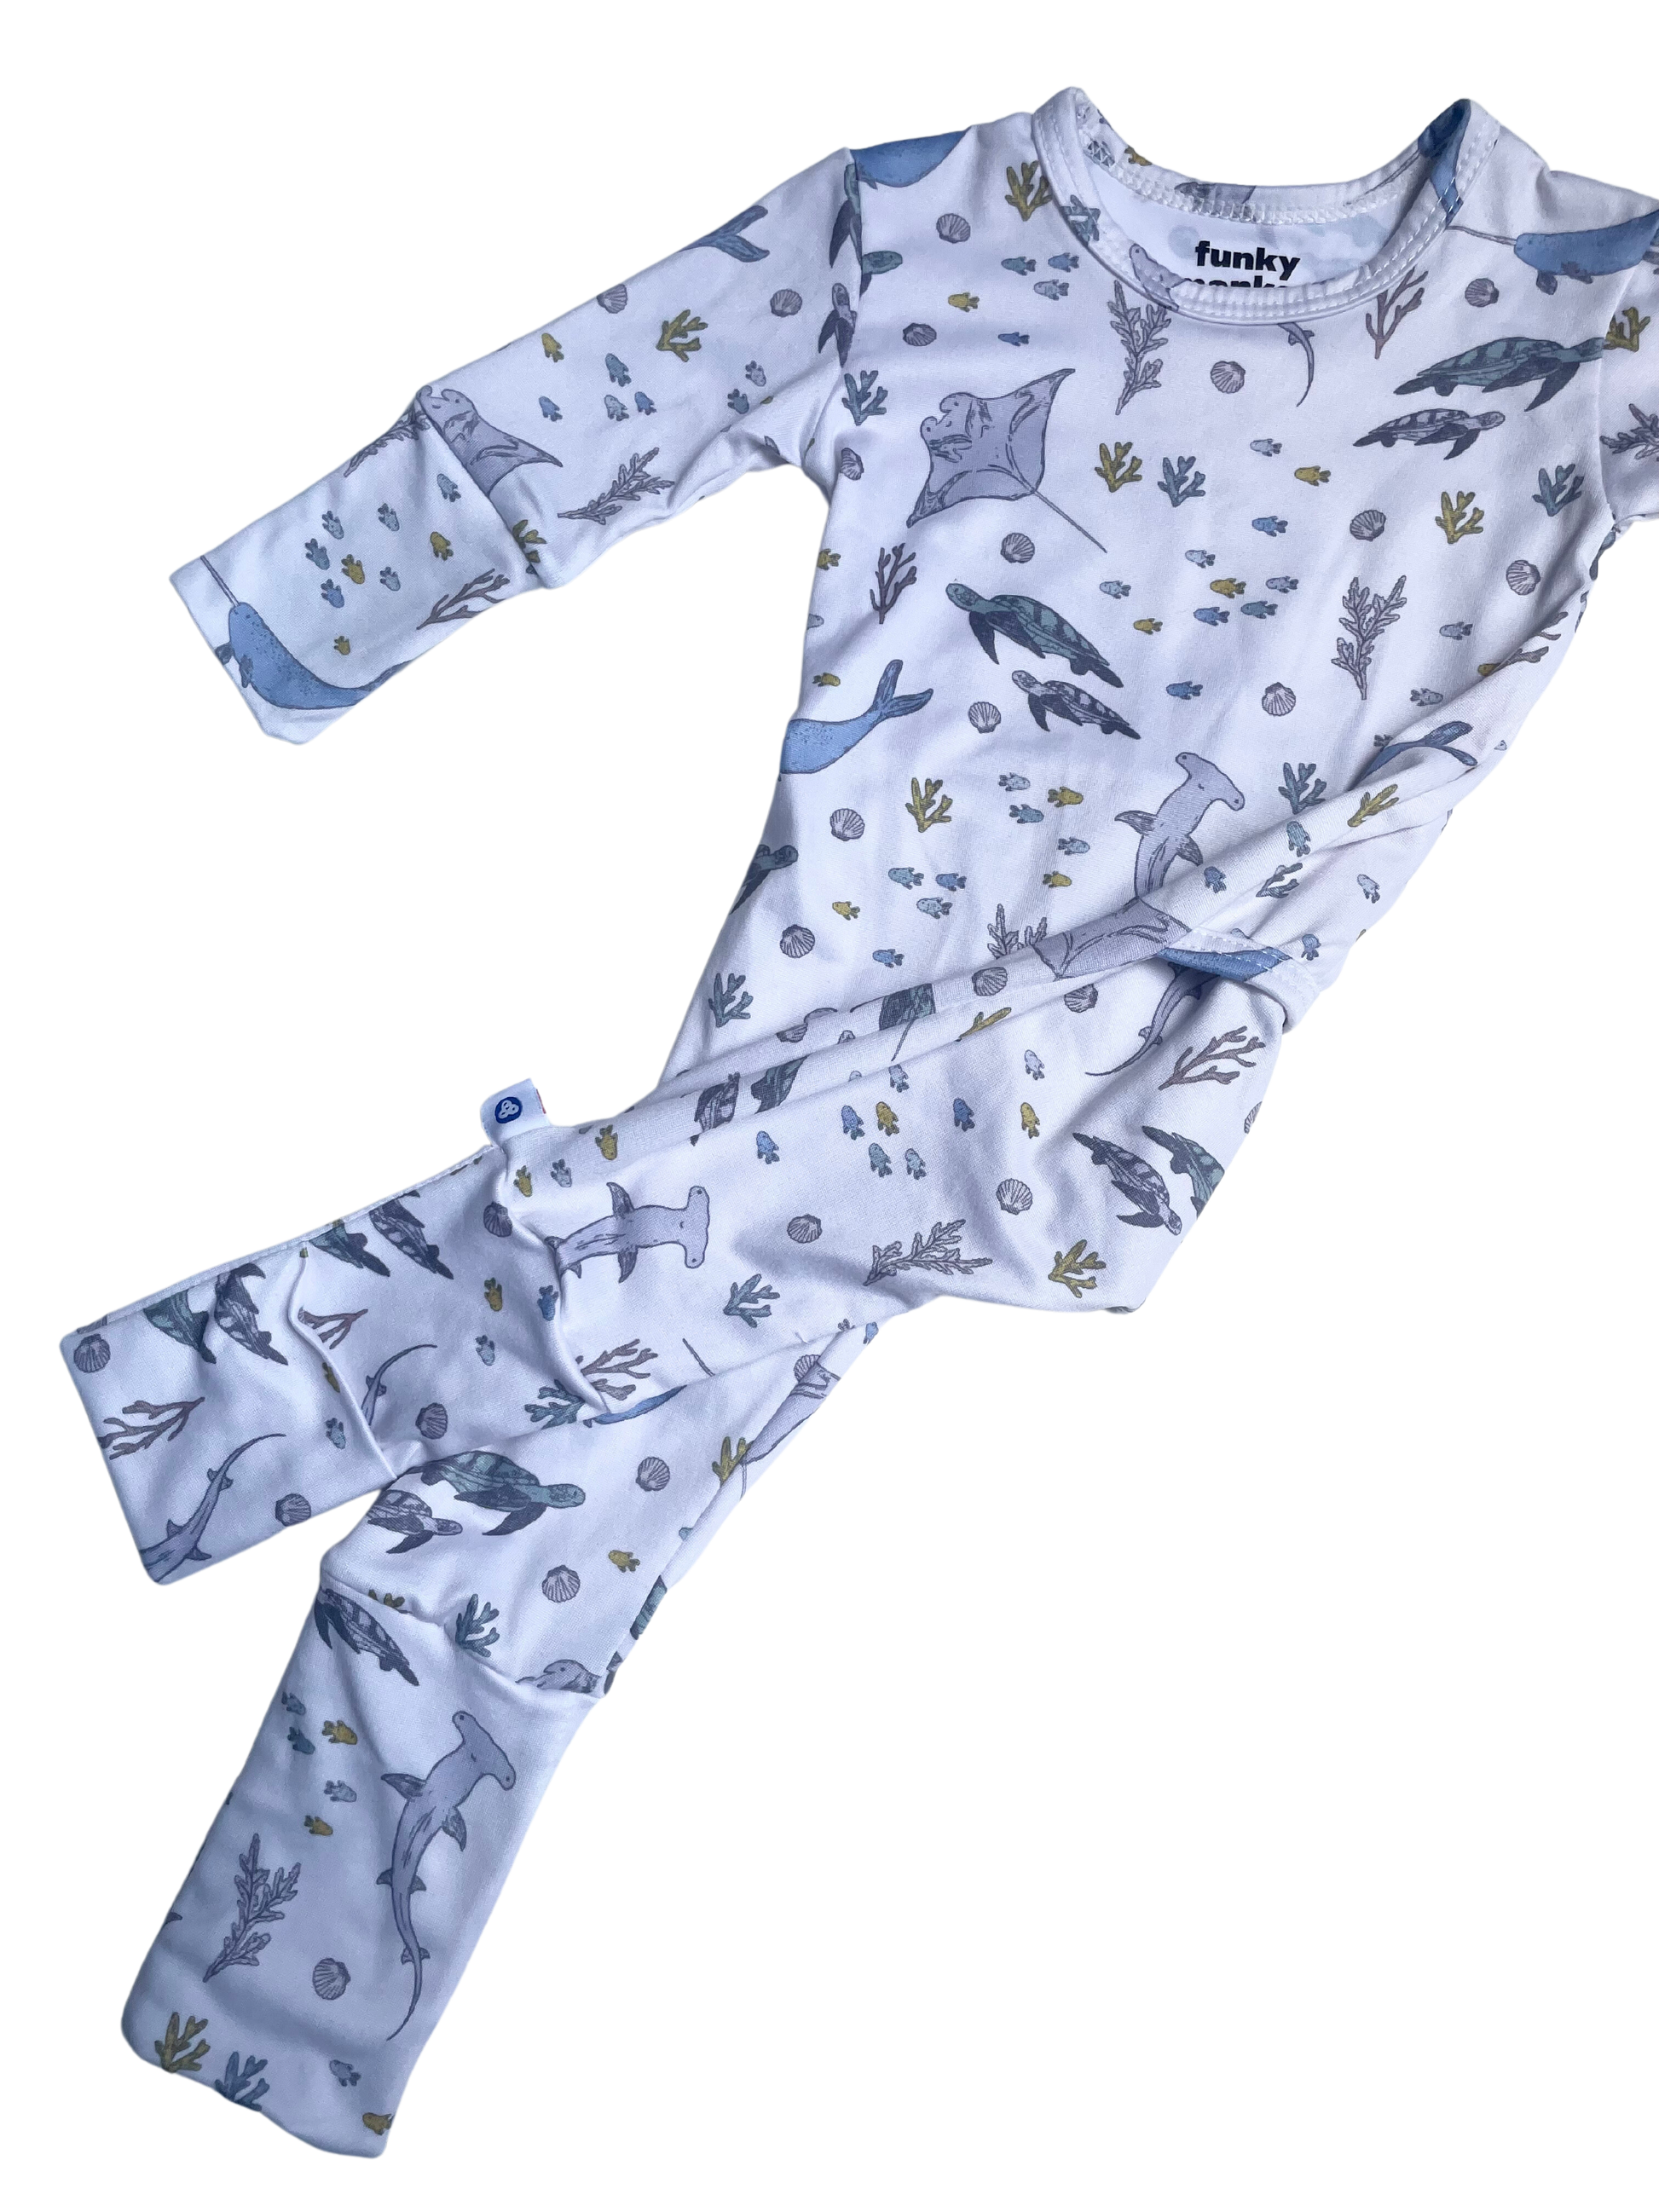 Pijama tiburón Imágenes vectoriales de stock - Alamy